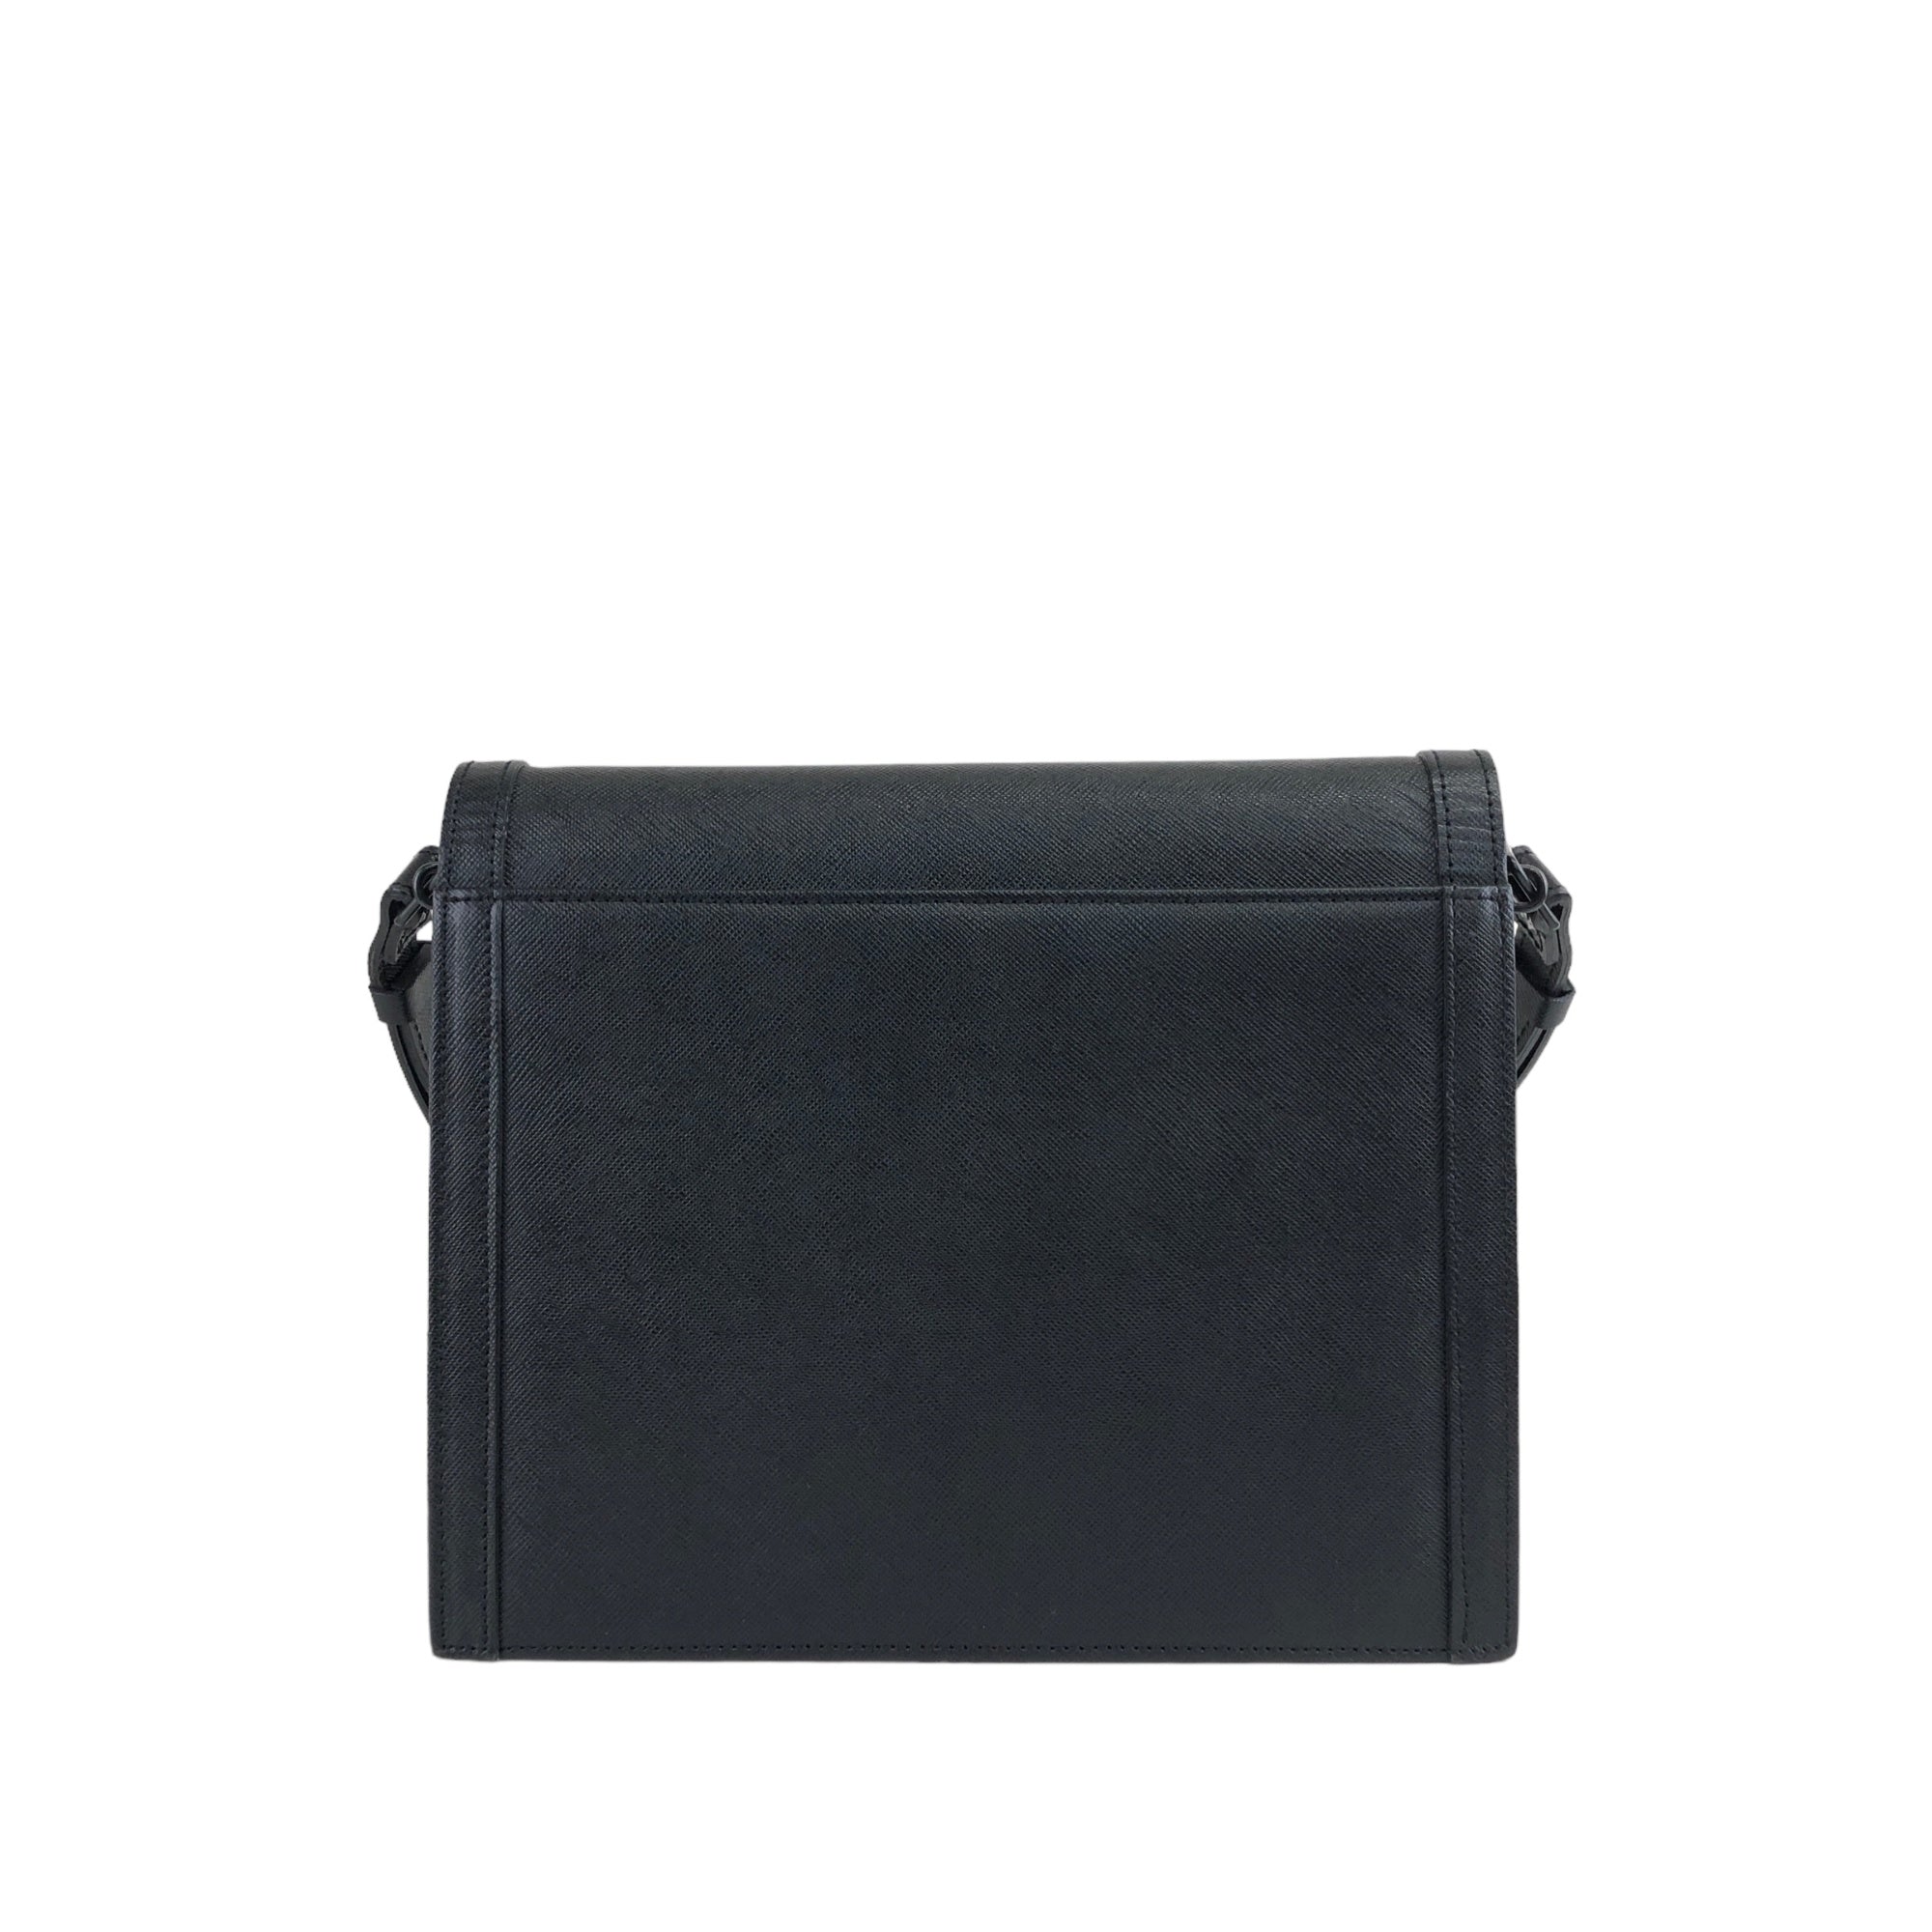 Toy kate handbag Saint Laurent Black in Suede - 25497318